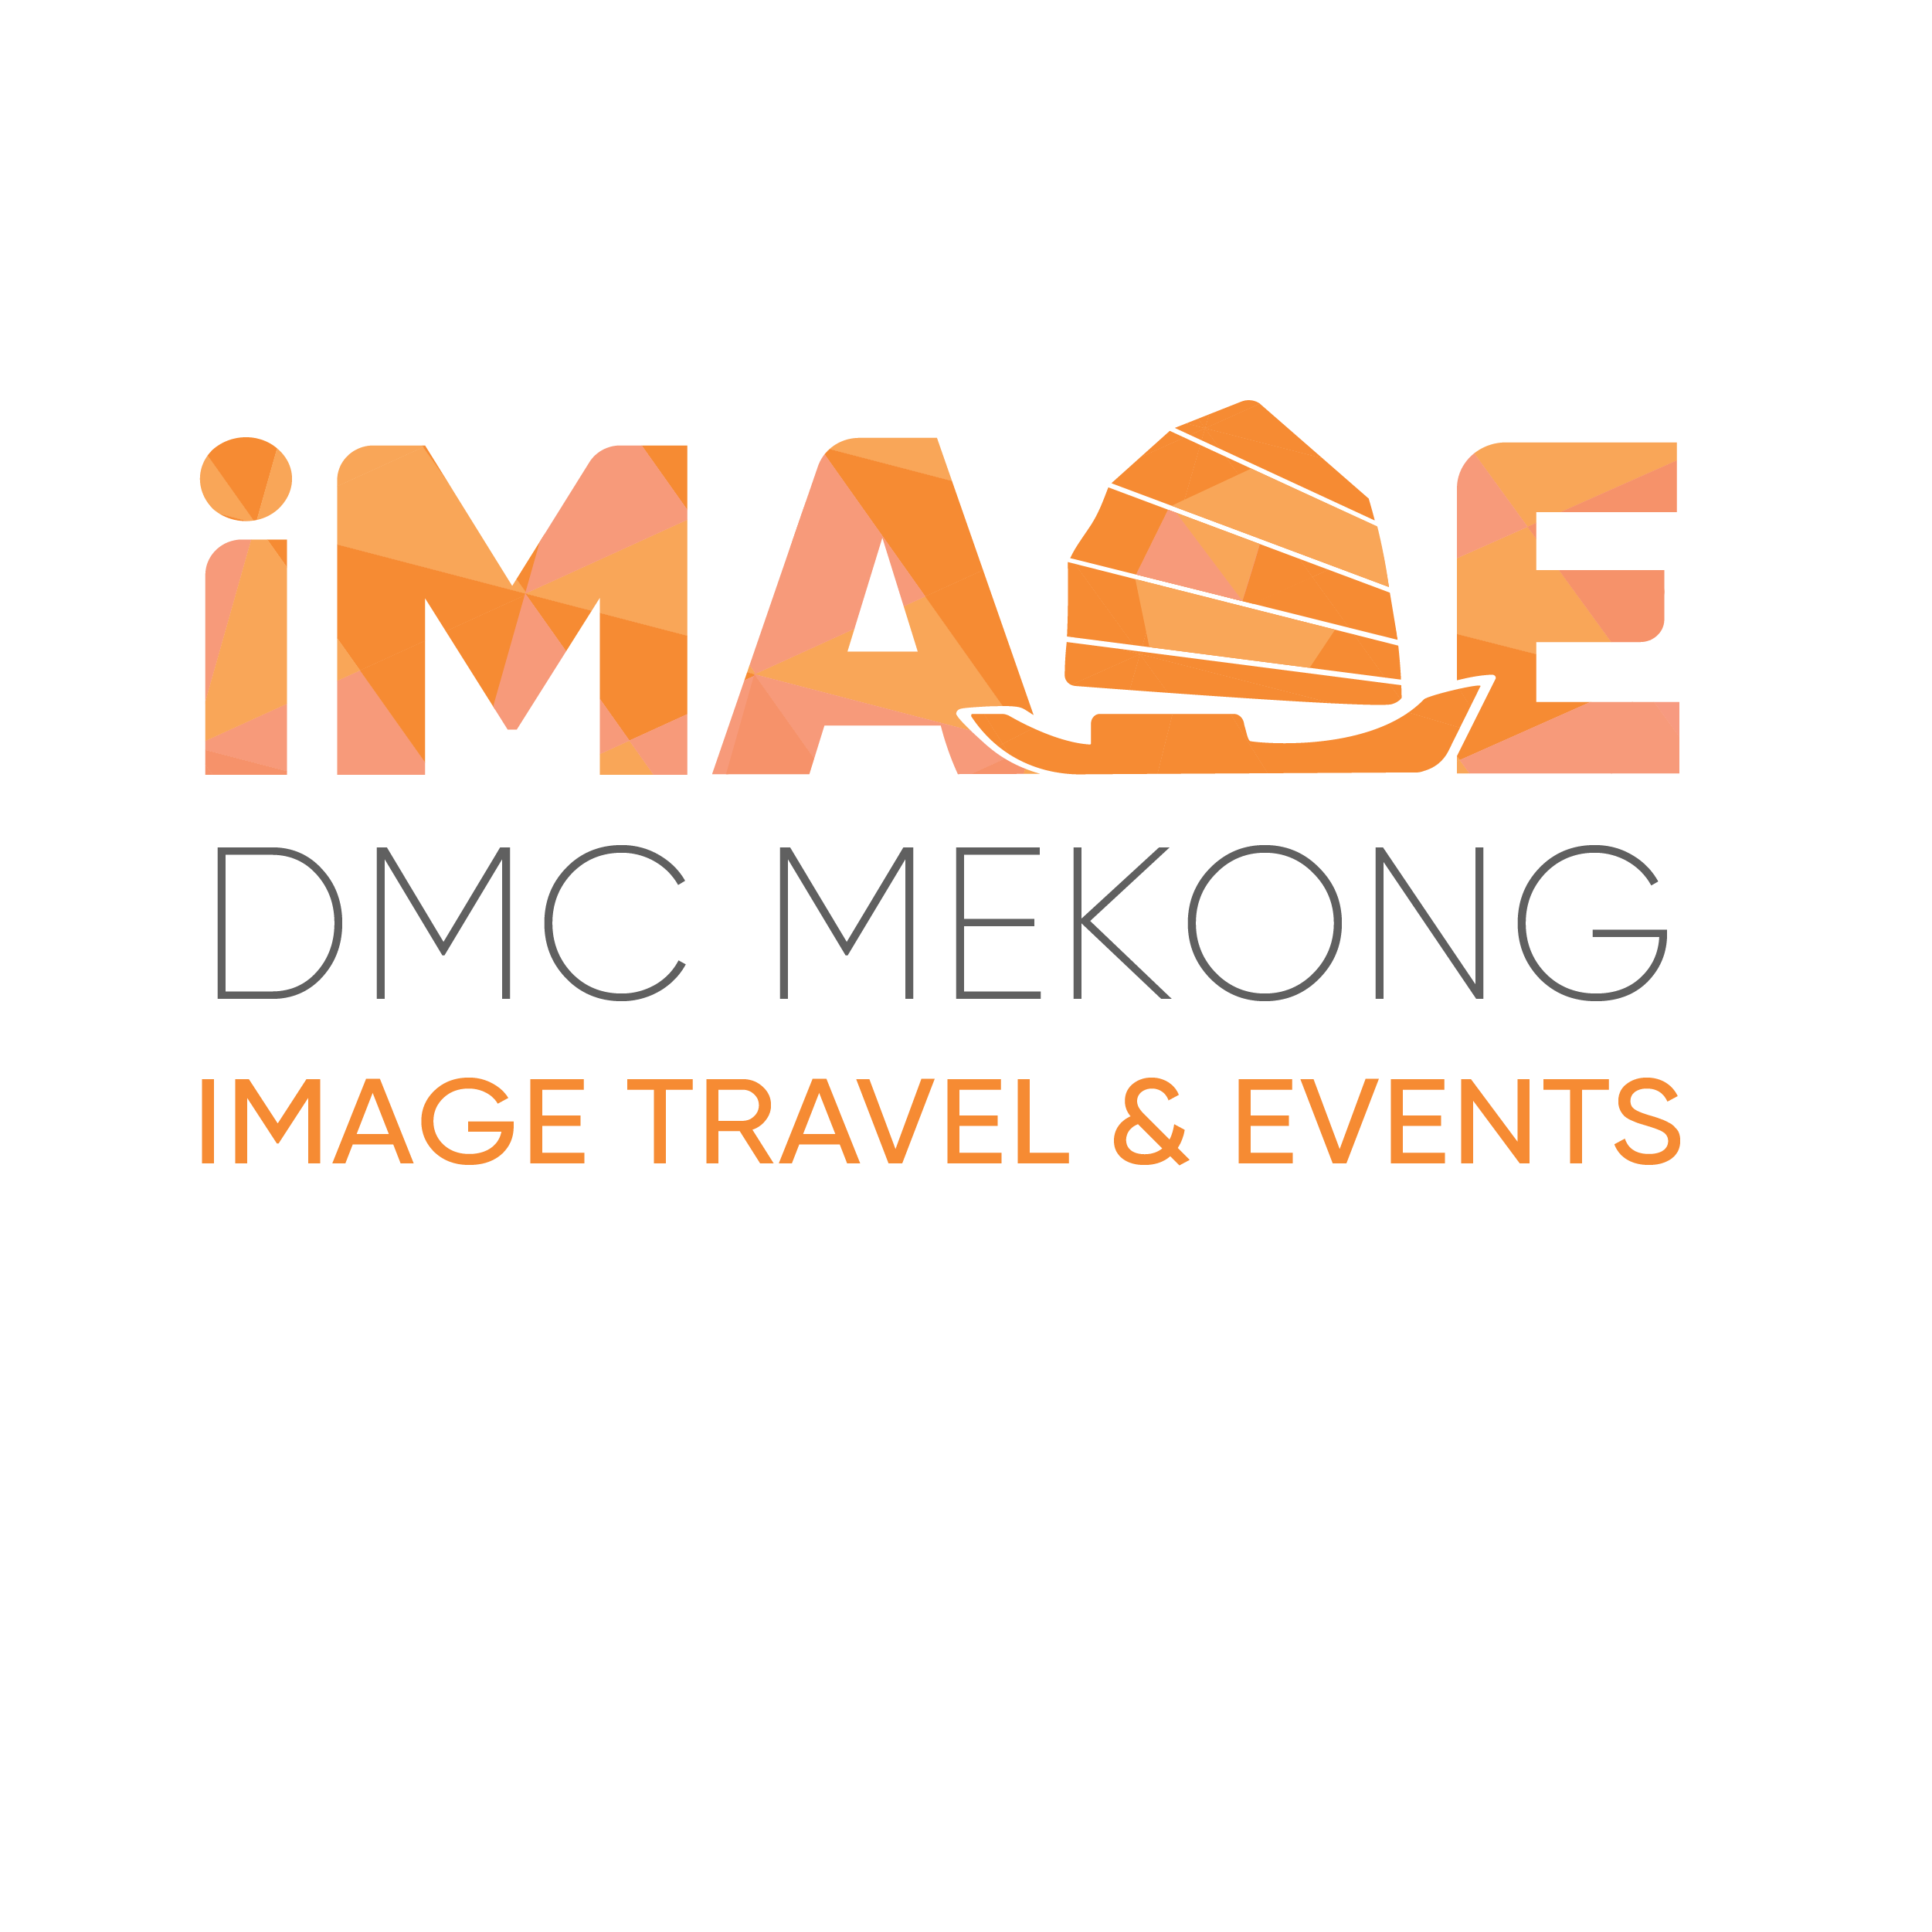 dmc mekong image